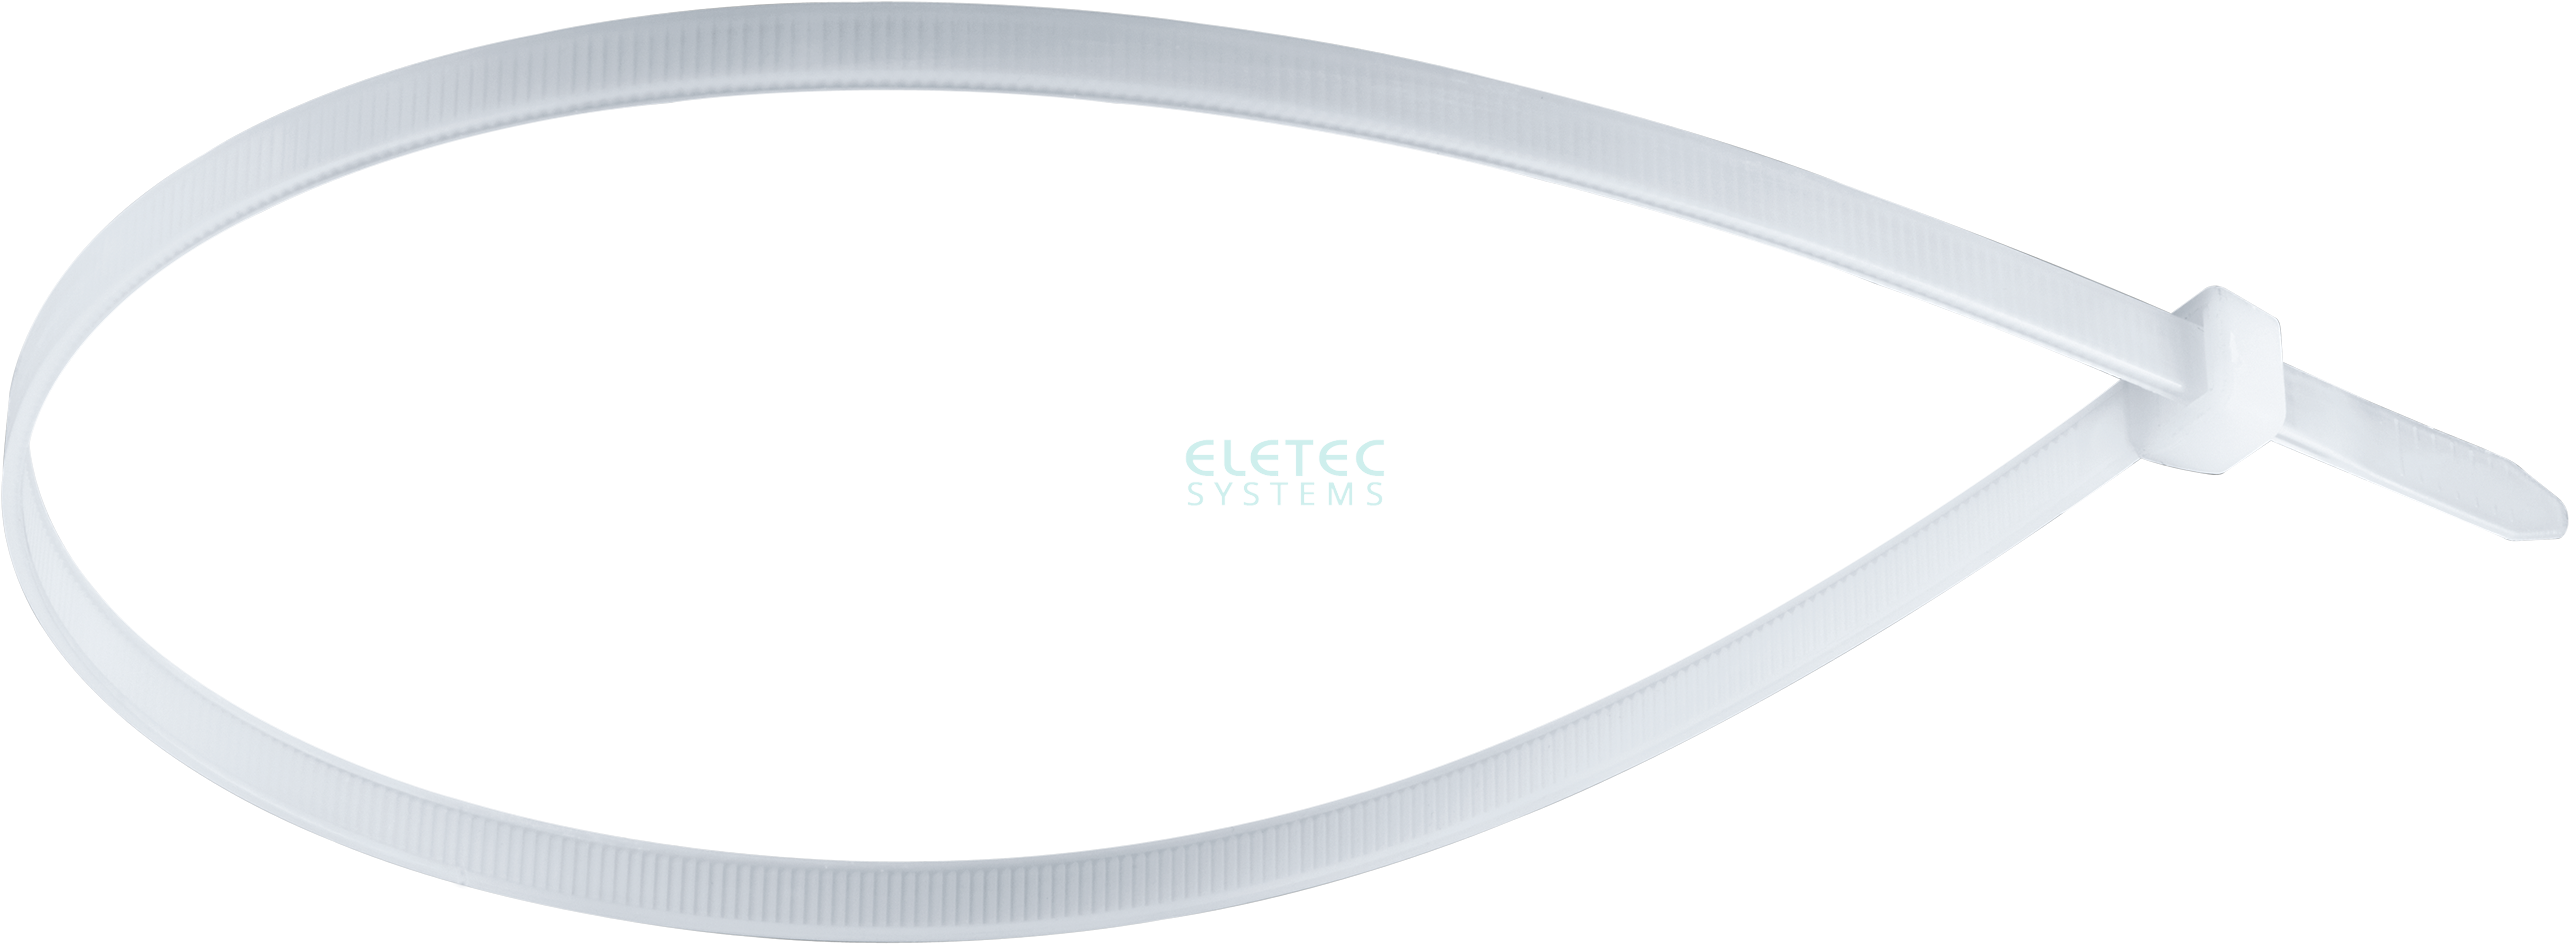 картинка Стяжка для кабеля 200х4,8 бесцветная (100 шт) Eletec Systems